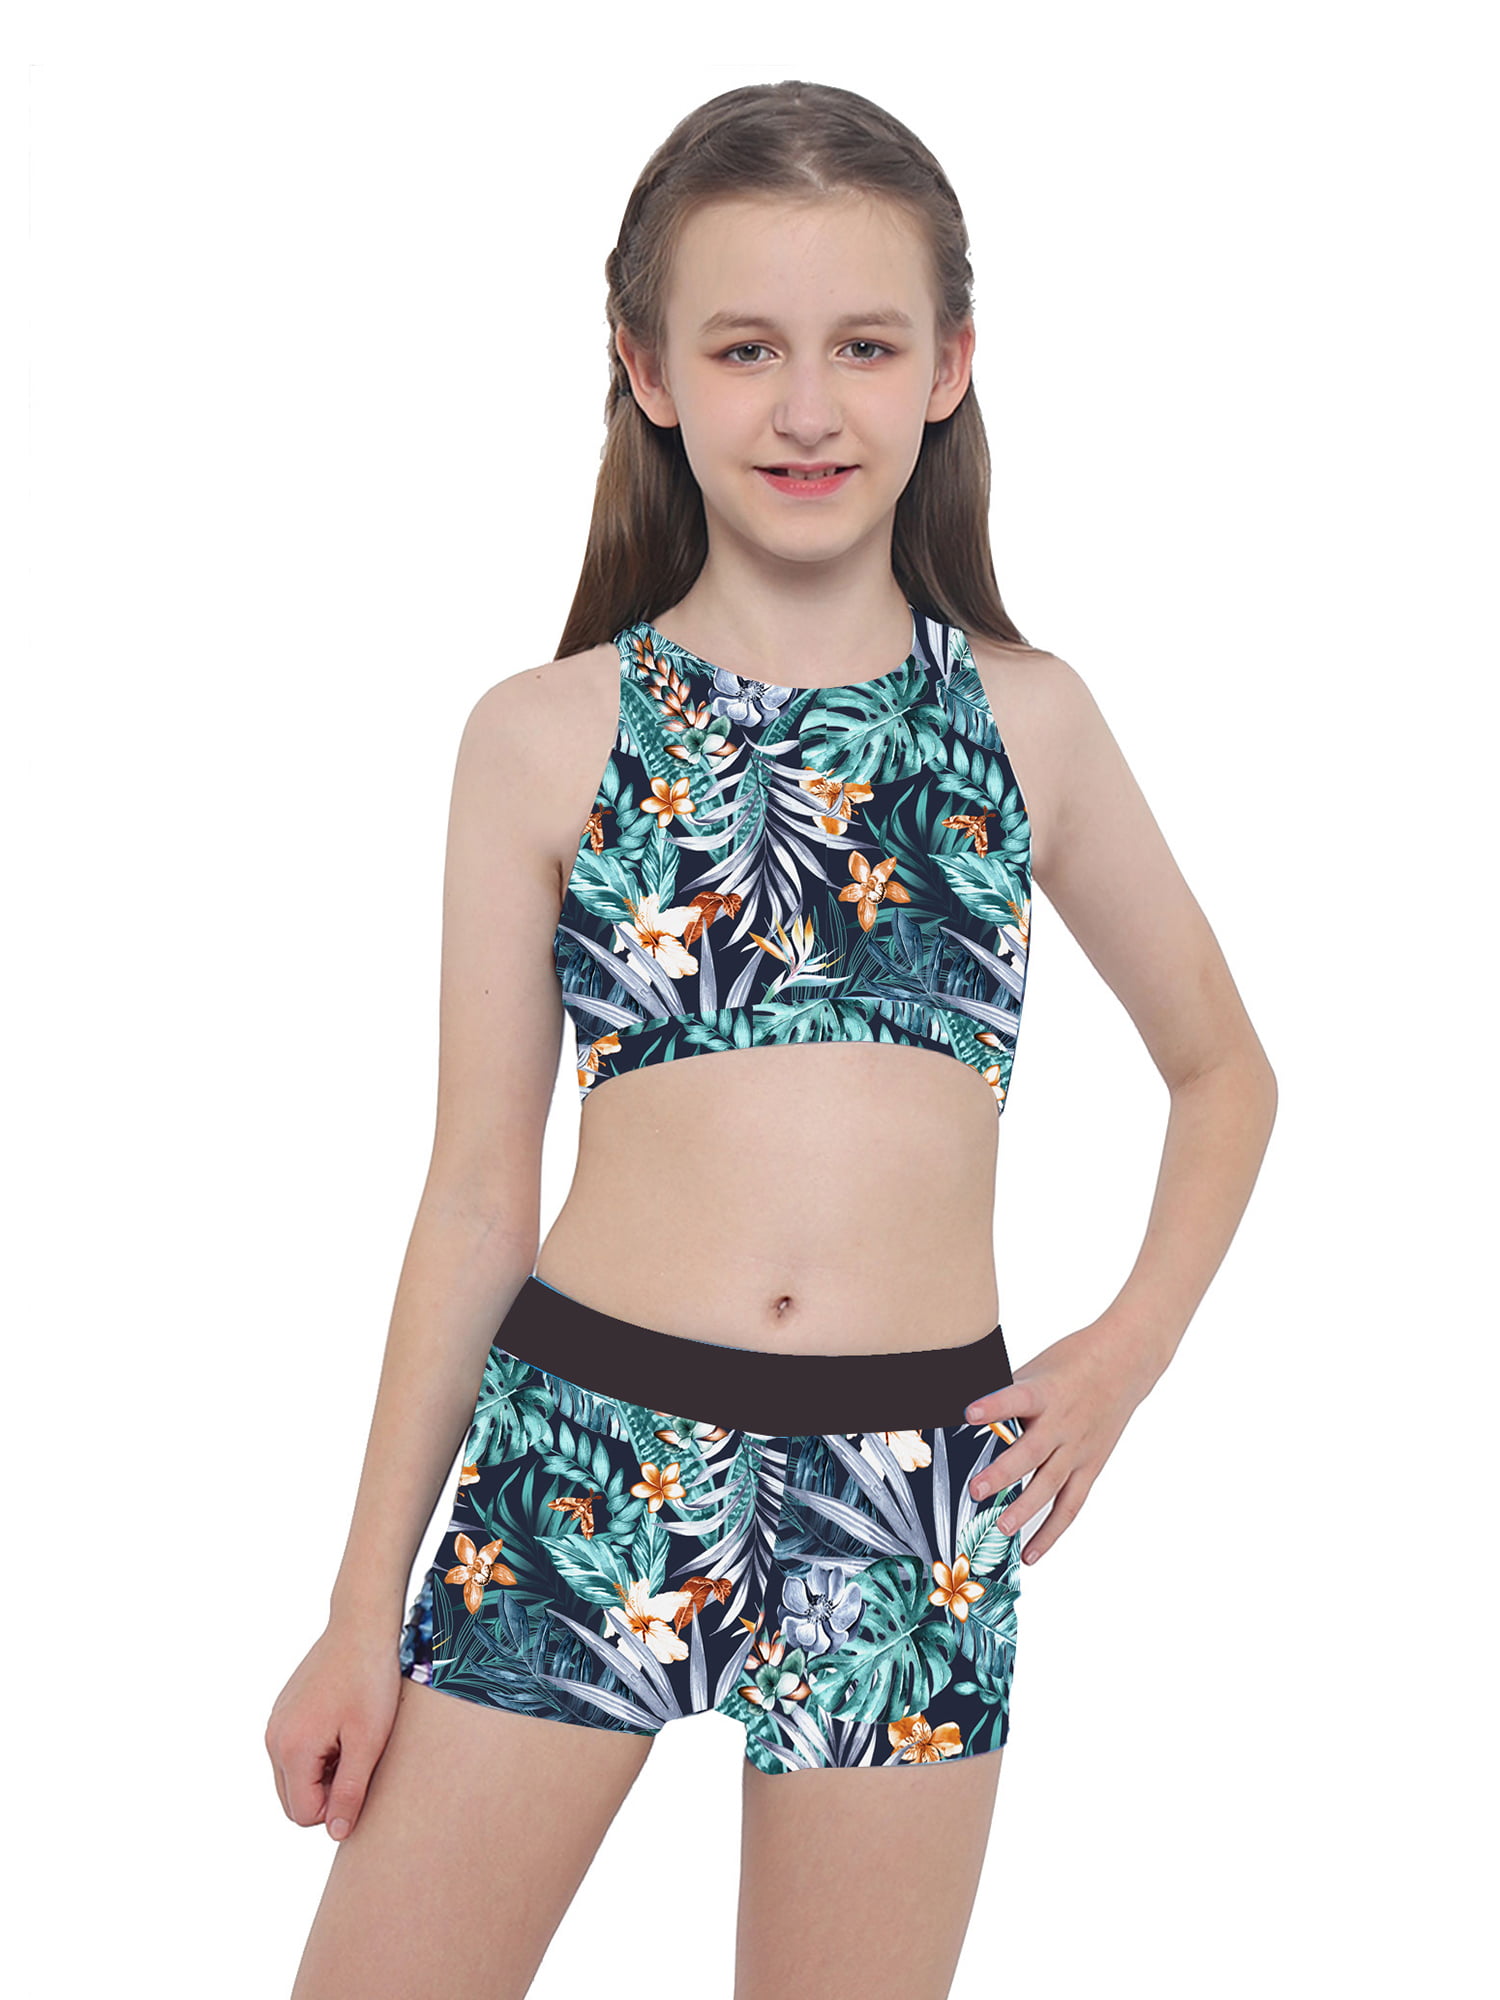 Wallflower Girls Leopard 2-Piece Skirtalls Set Outfit